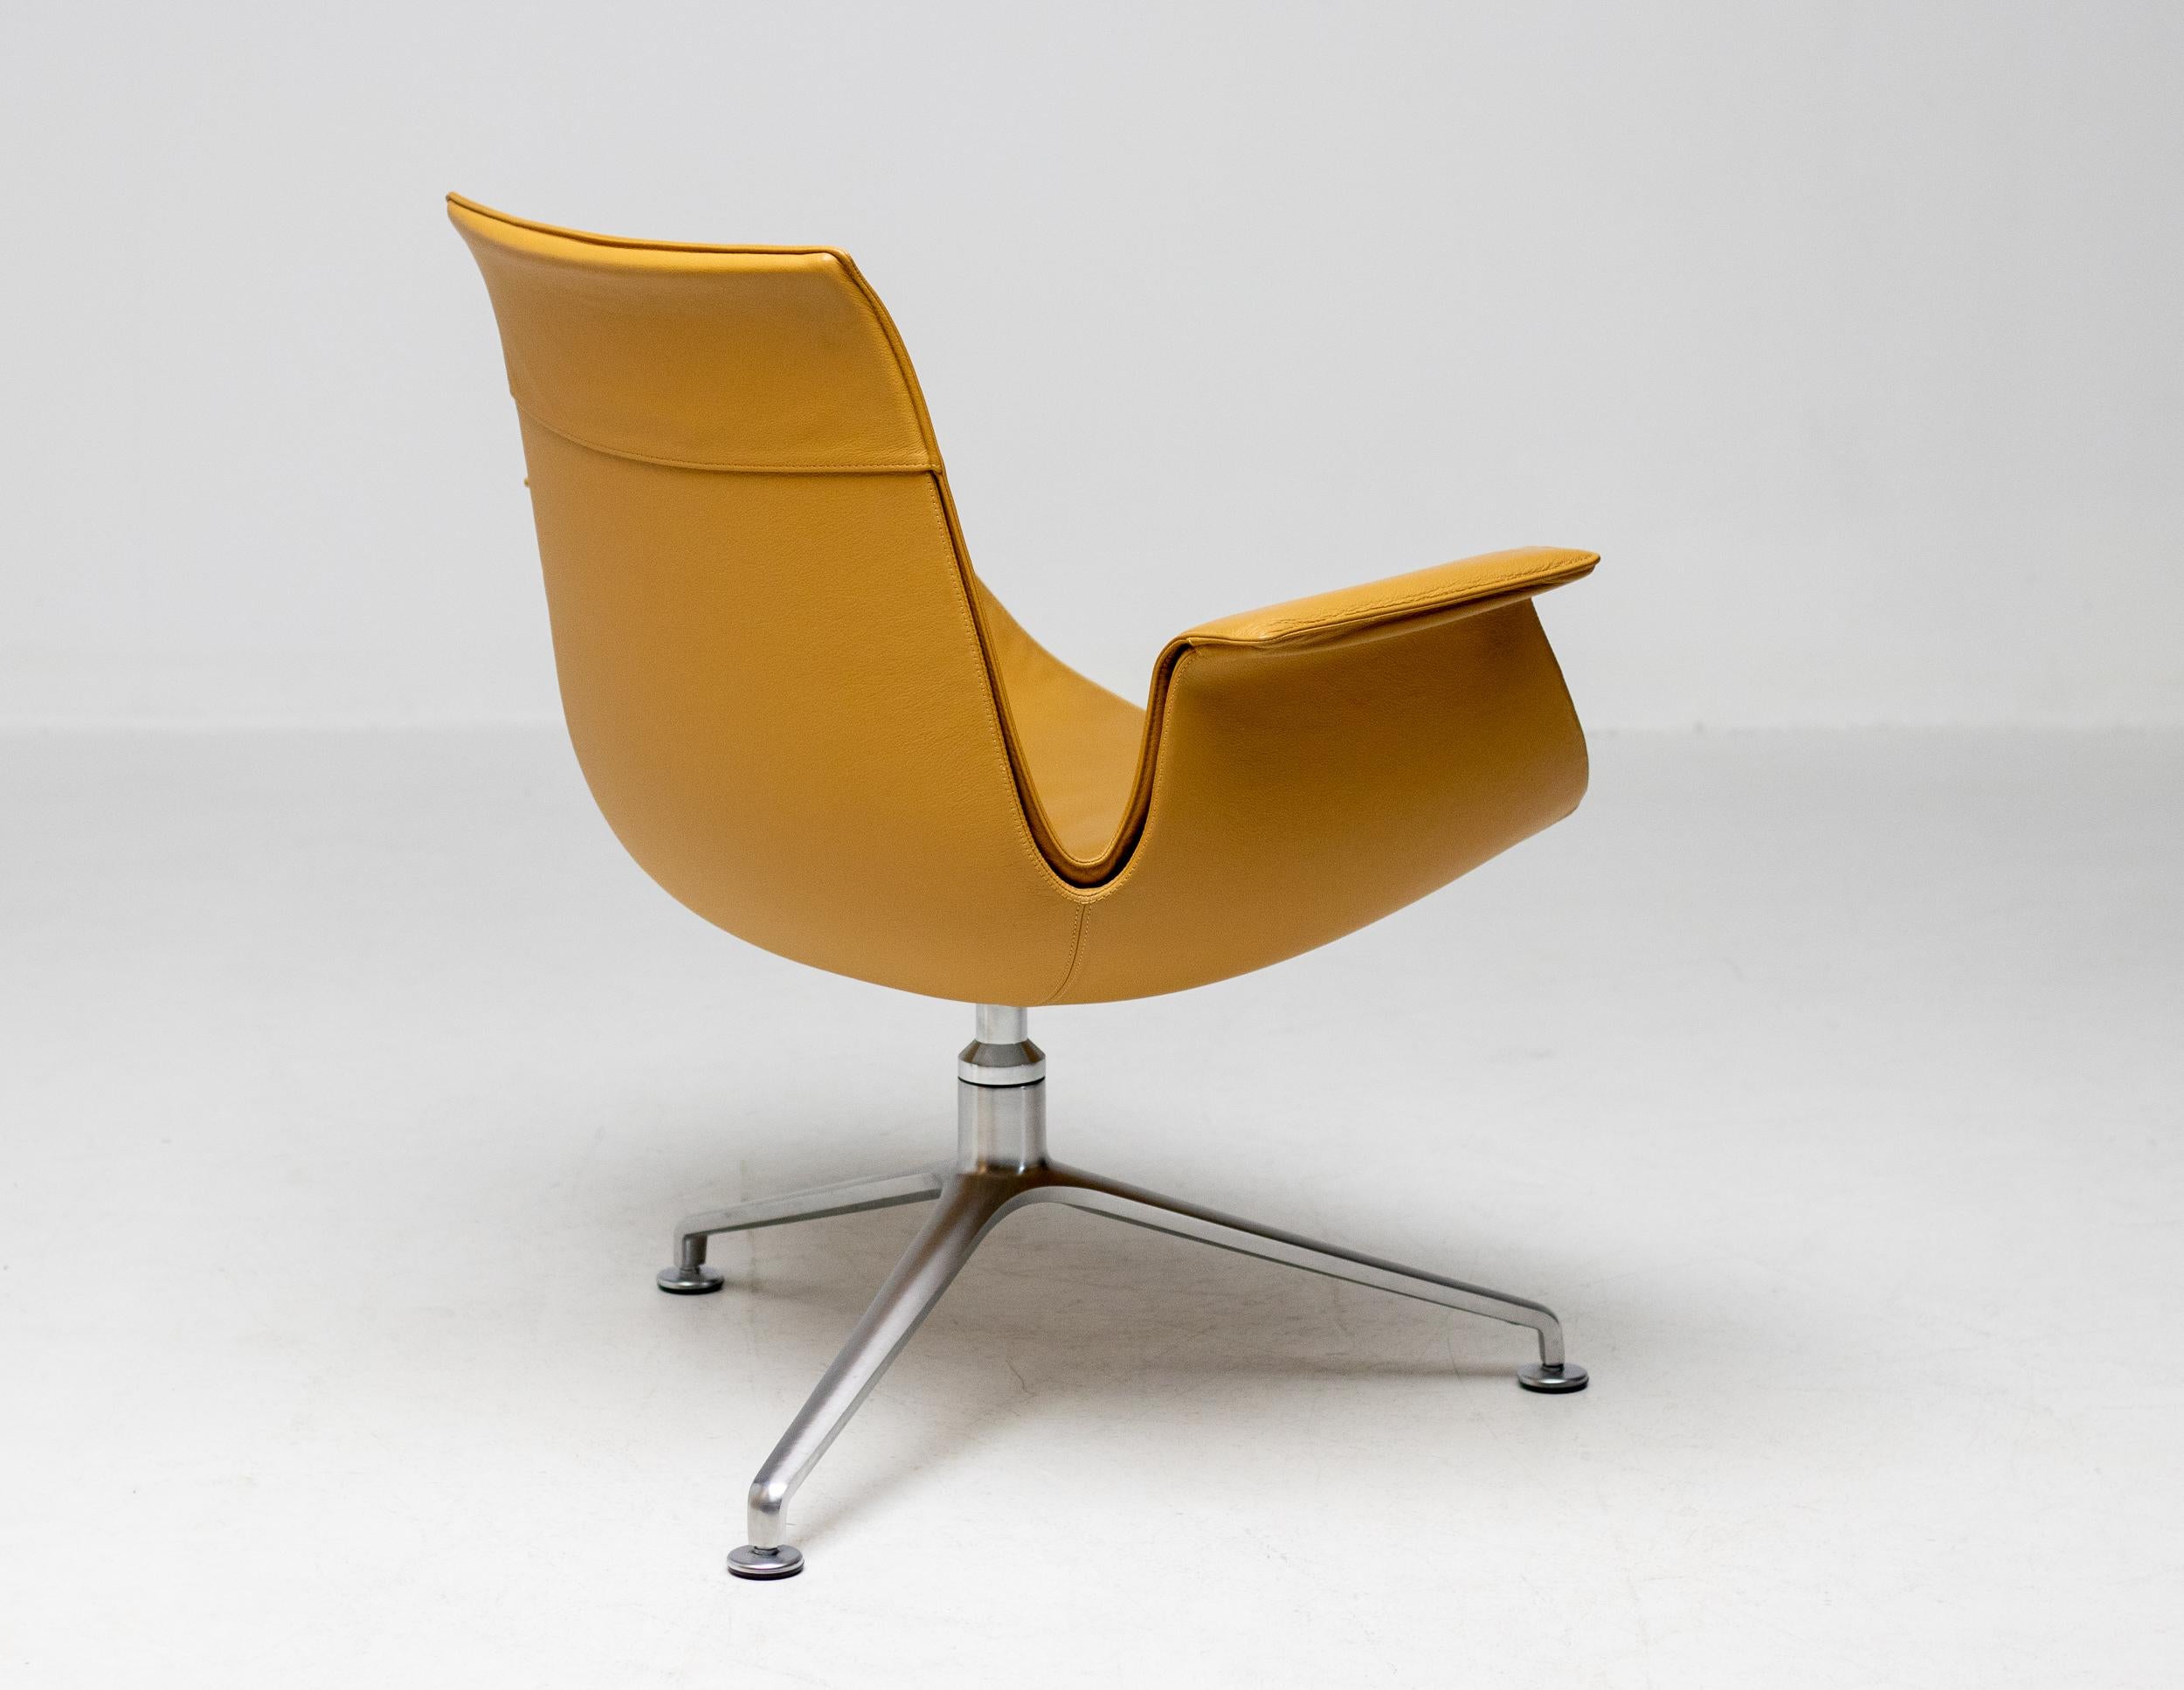 Magnifique chaise longue en cuir cognac conçue par Jørgen Kastholm & Preben Fabricius. 
Cette chaise dite 